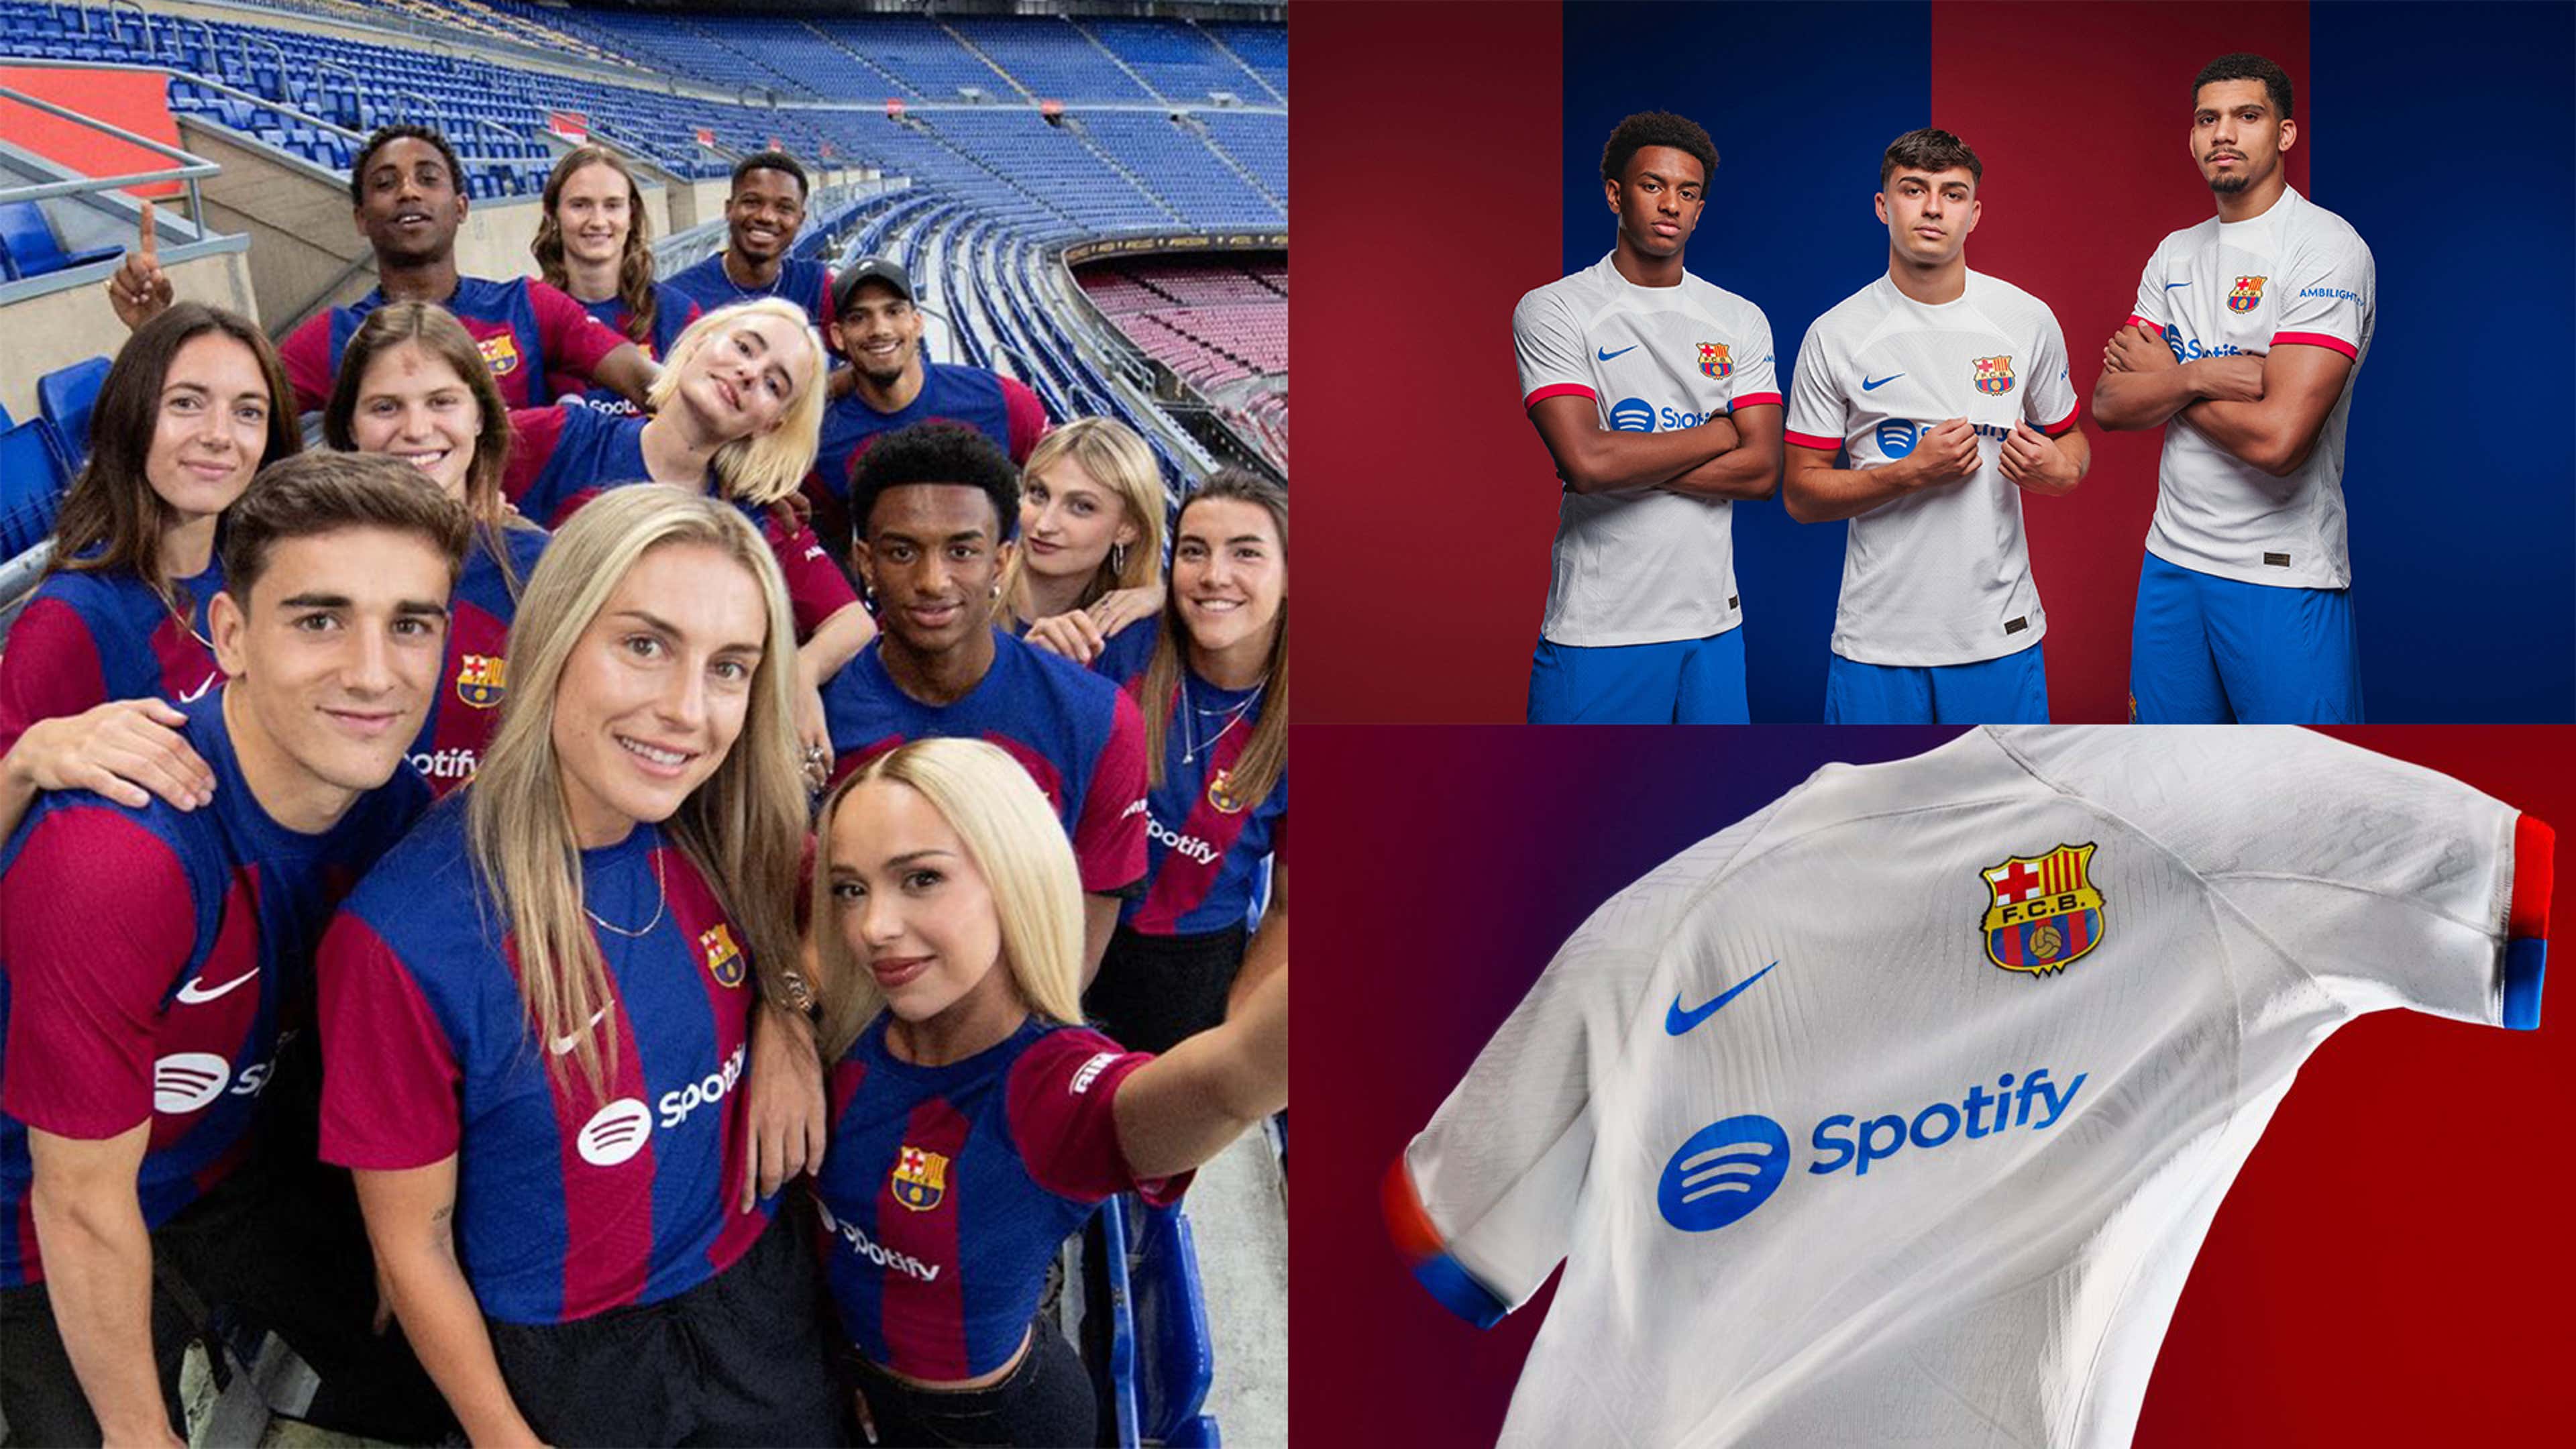 Camiseta futbol sala primera Equipación FC Barcelona 23/24 – Barça